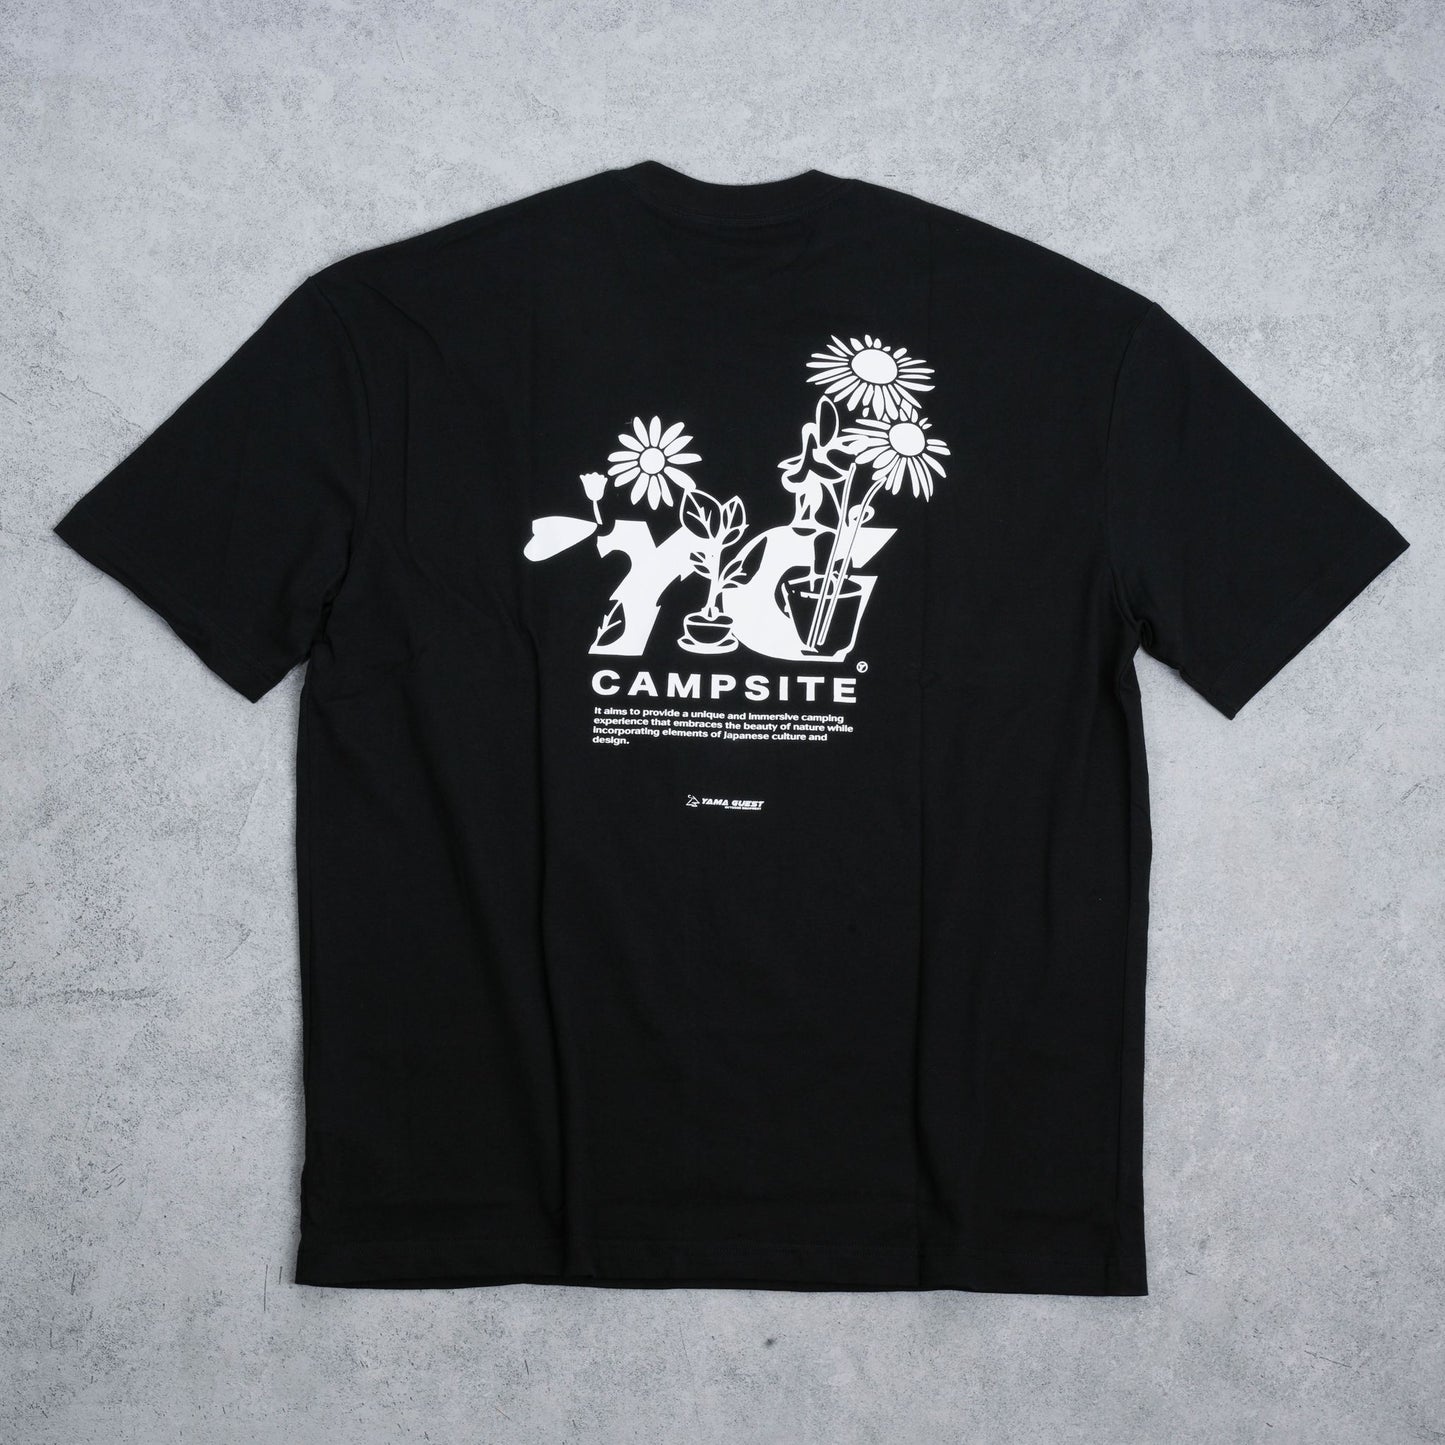 ST02 - YamaGuest T-shirt (BKX)